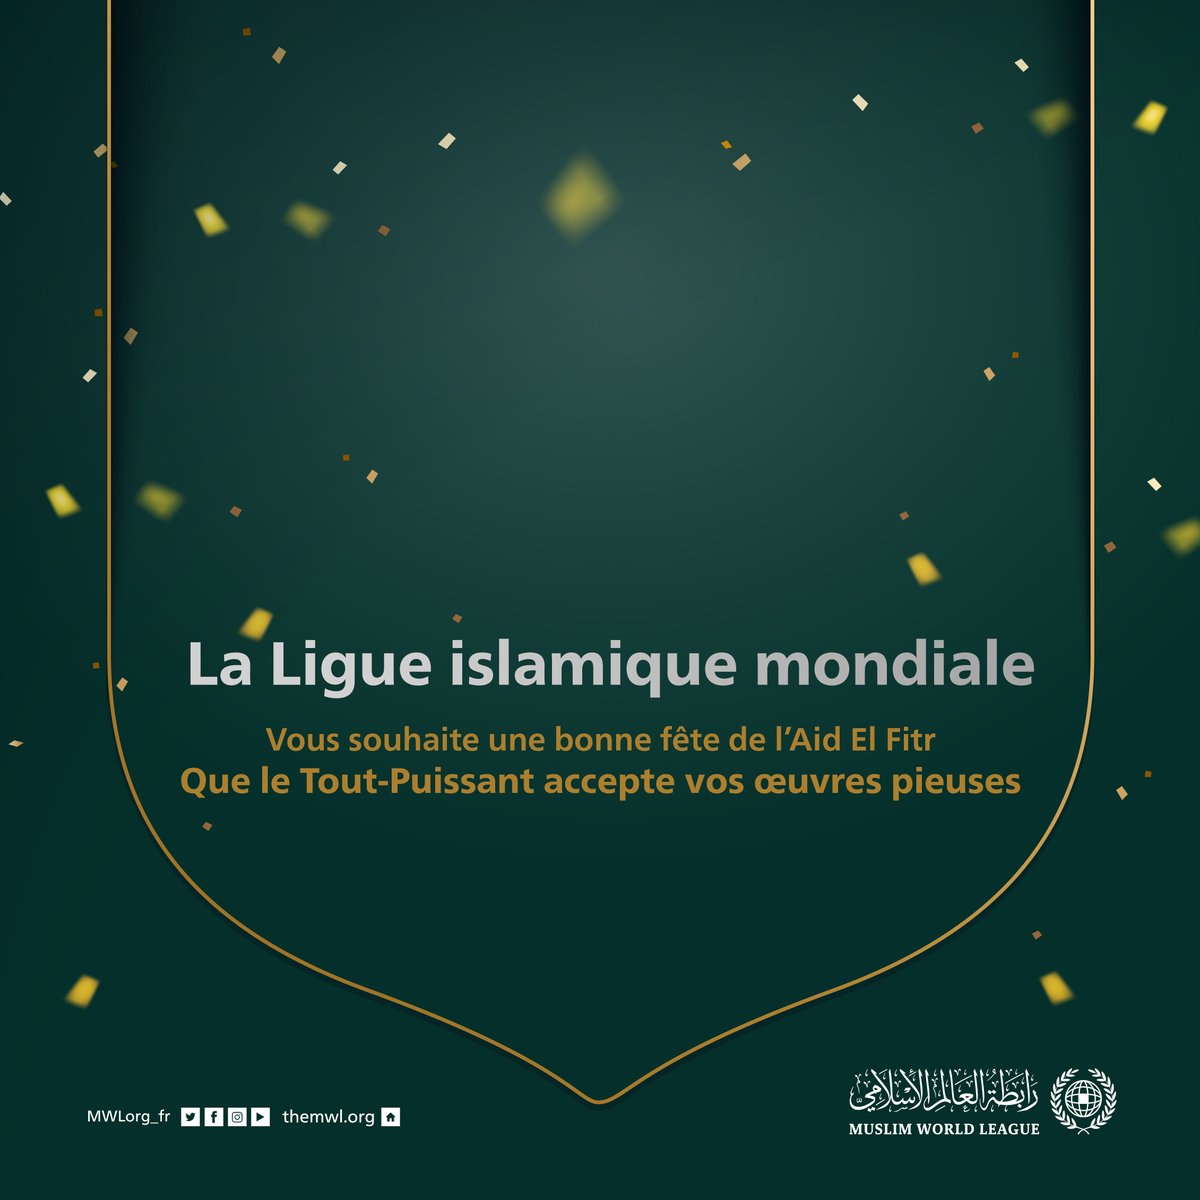 La Ligue Islamique Mondiale vous souhaite une bonne fête de l’Aid El Fitr, que le Tout-Puissant accepte nos œuvres pieuses et vous donne santé et bonheur